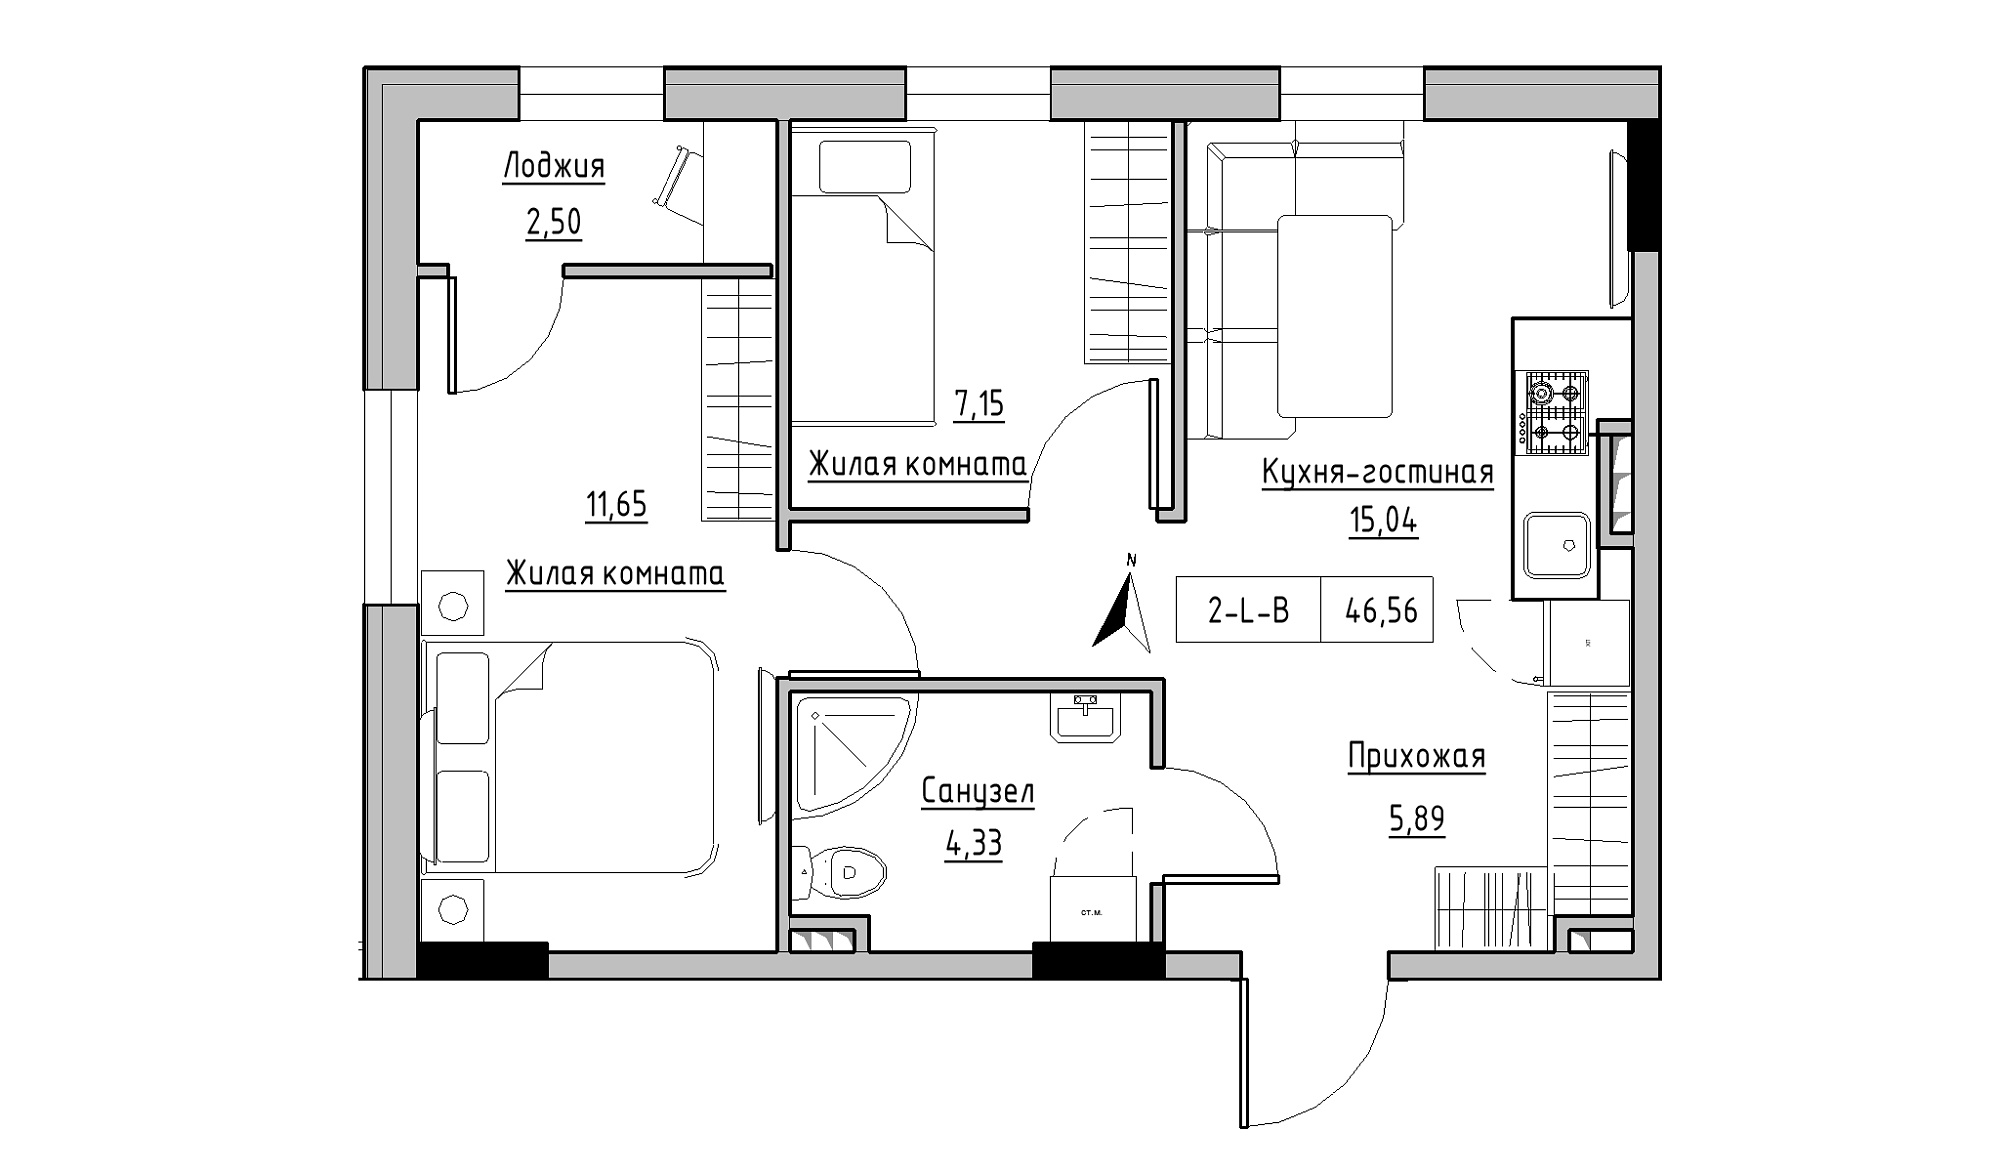 Планування 2-к квартира площею 46.56м2, KS-025-02/0006.